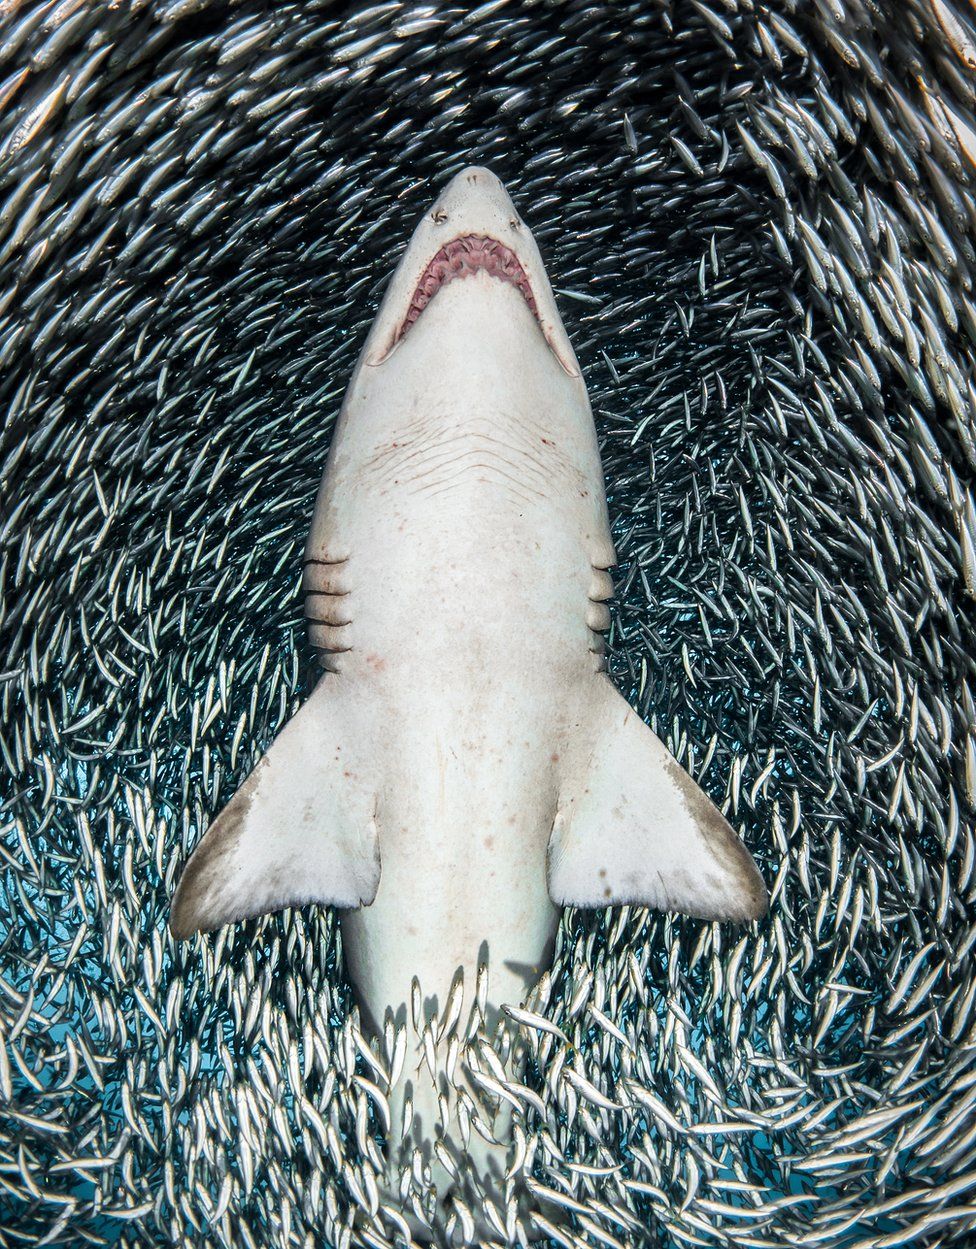 Tanya Houppermans'ın bu kaplan köpek balığını çekebilmesi için, etrafındaki milyonlarca ufak balıkla sırtüstü yüzmesi gerekmiş. Kaplan köpek balığıyla birlikte suda ilerledikçe, etrafındaki balıklar kenara çekilmiş, bu fotoğrafı çekmesine olanak sağlamış.